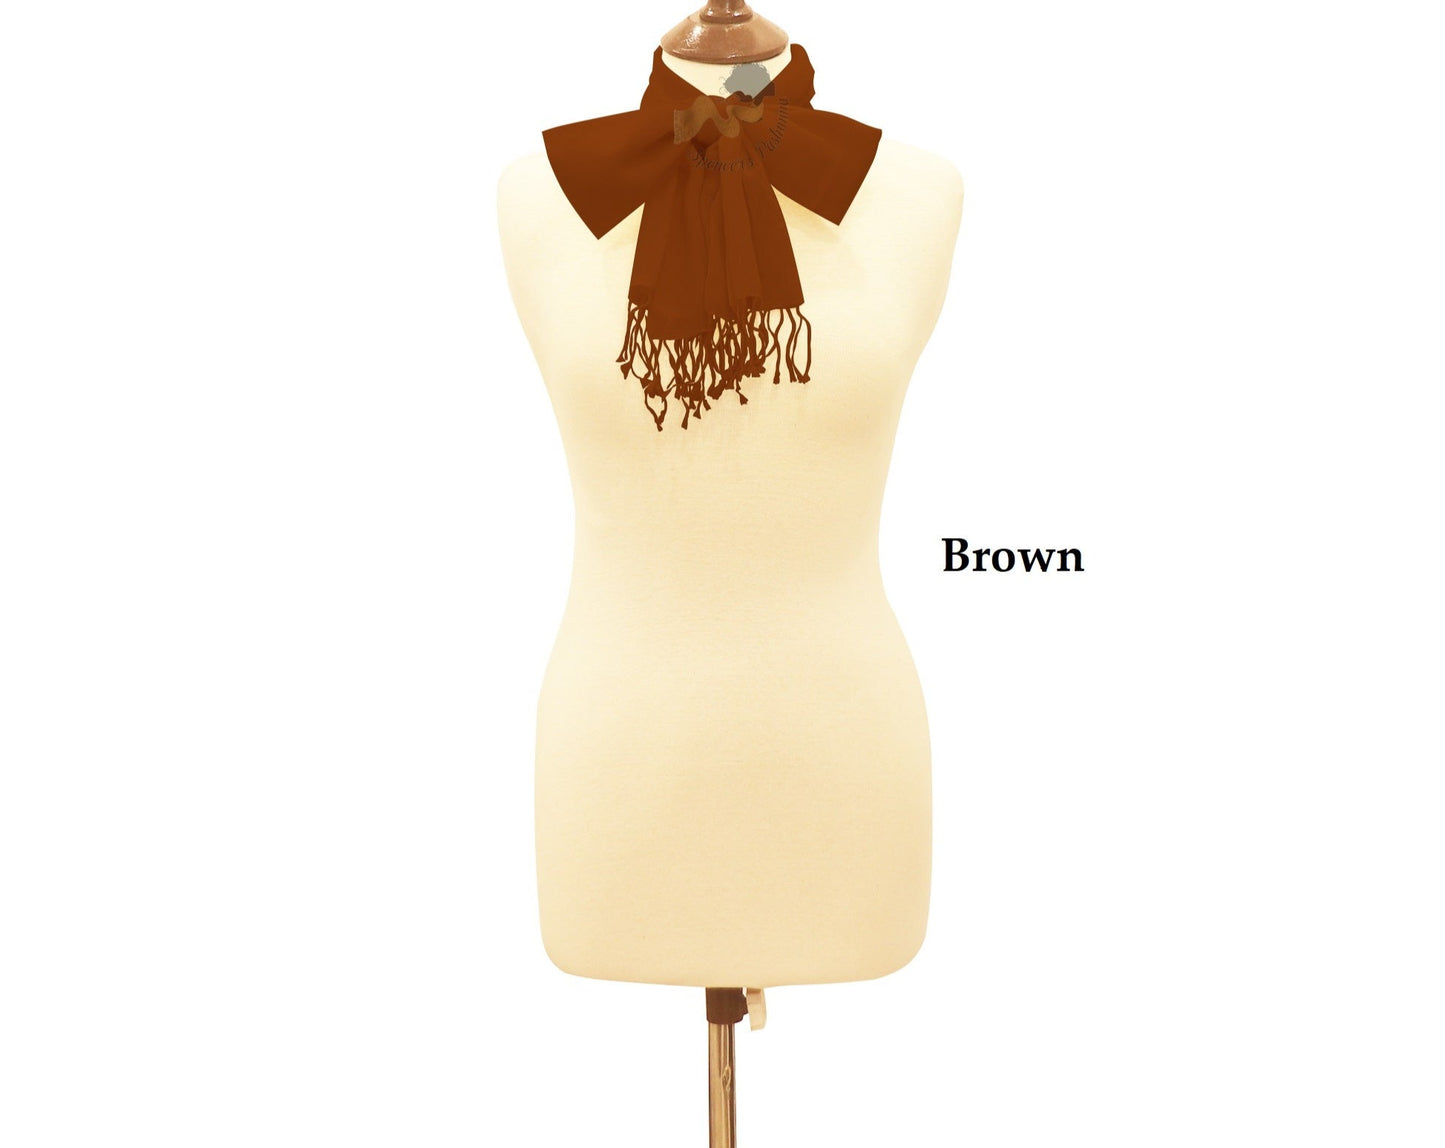 Brown scarf ring pashmina.